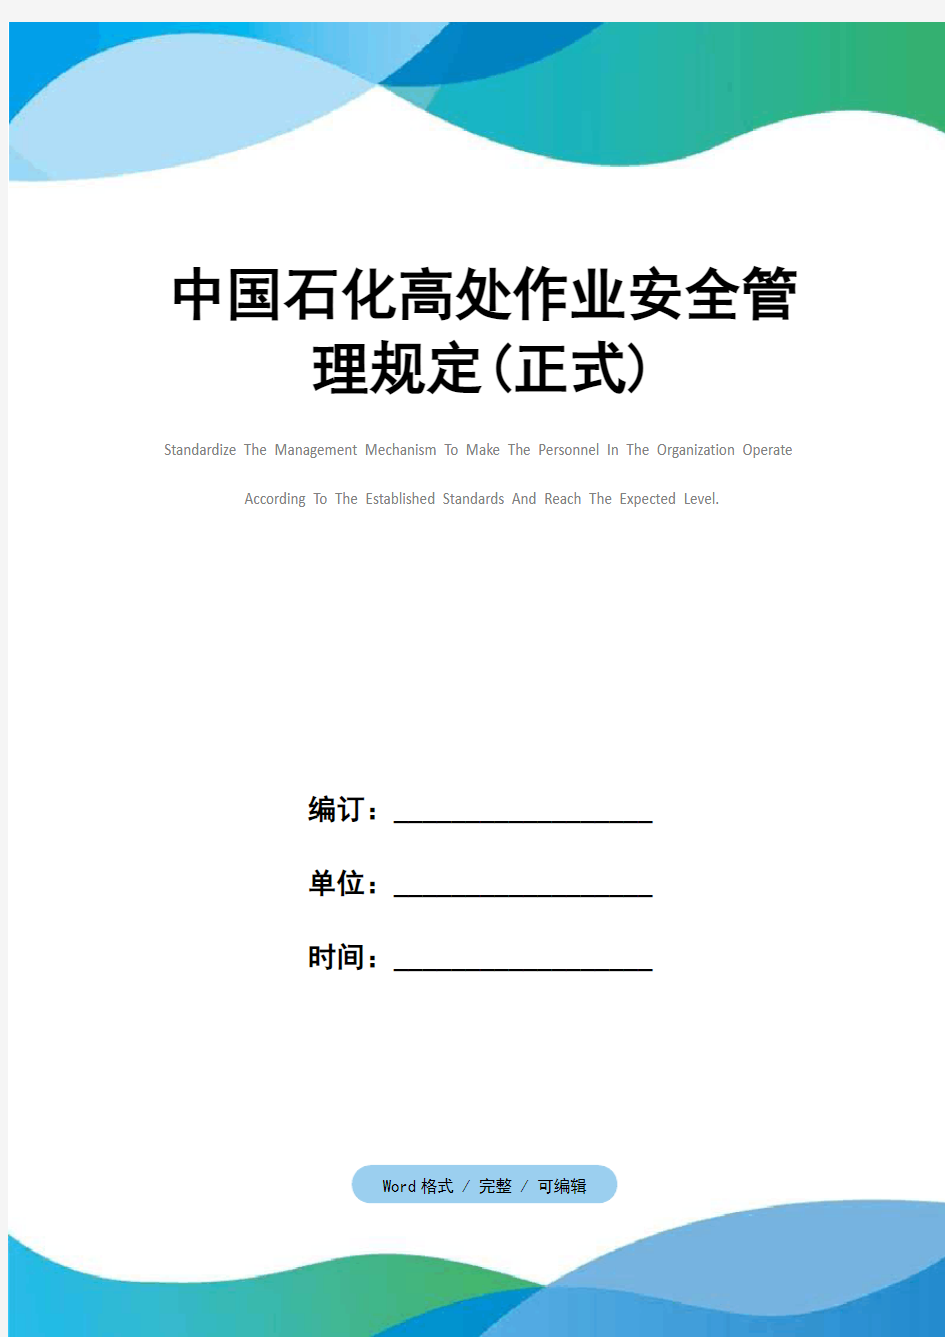 中国石化高处作业安全管理规定(正式)